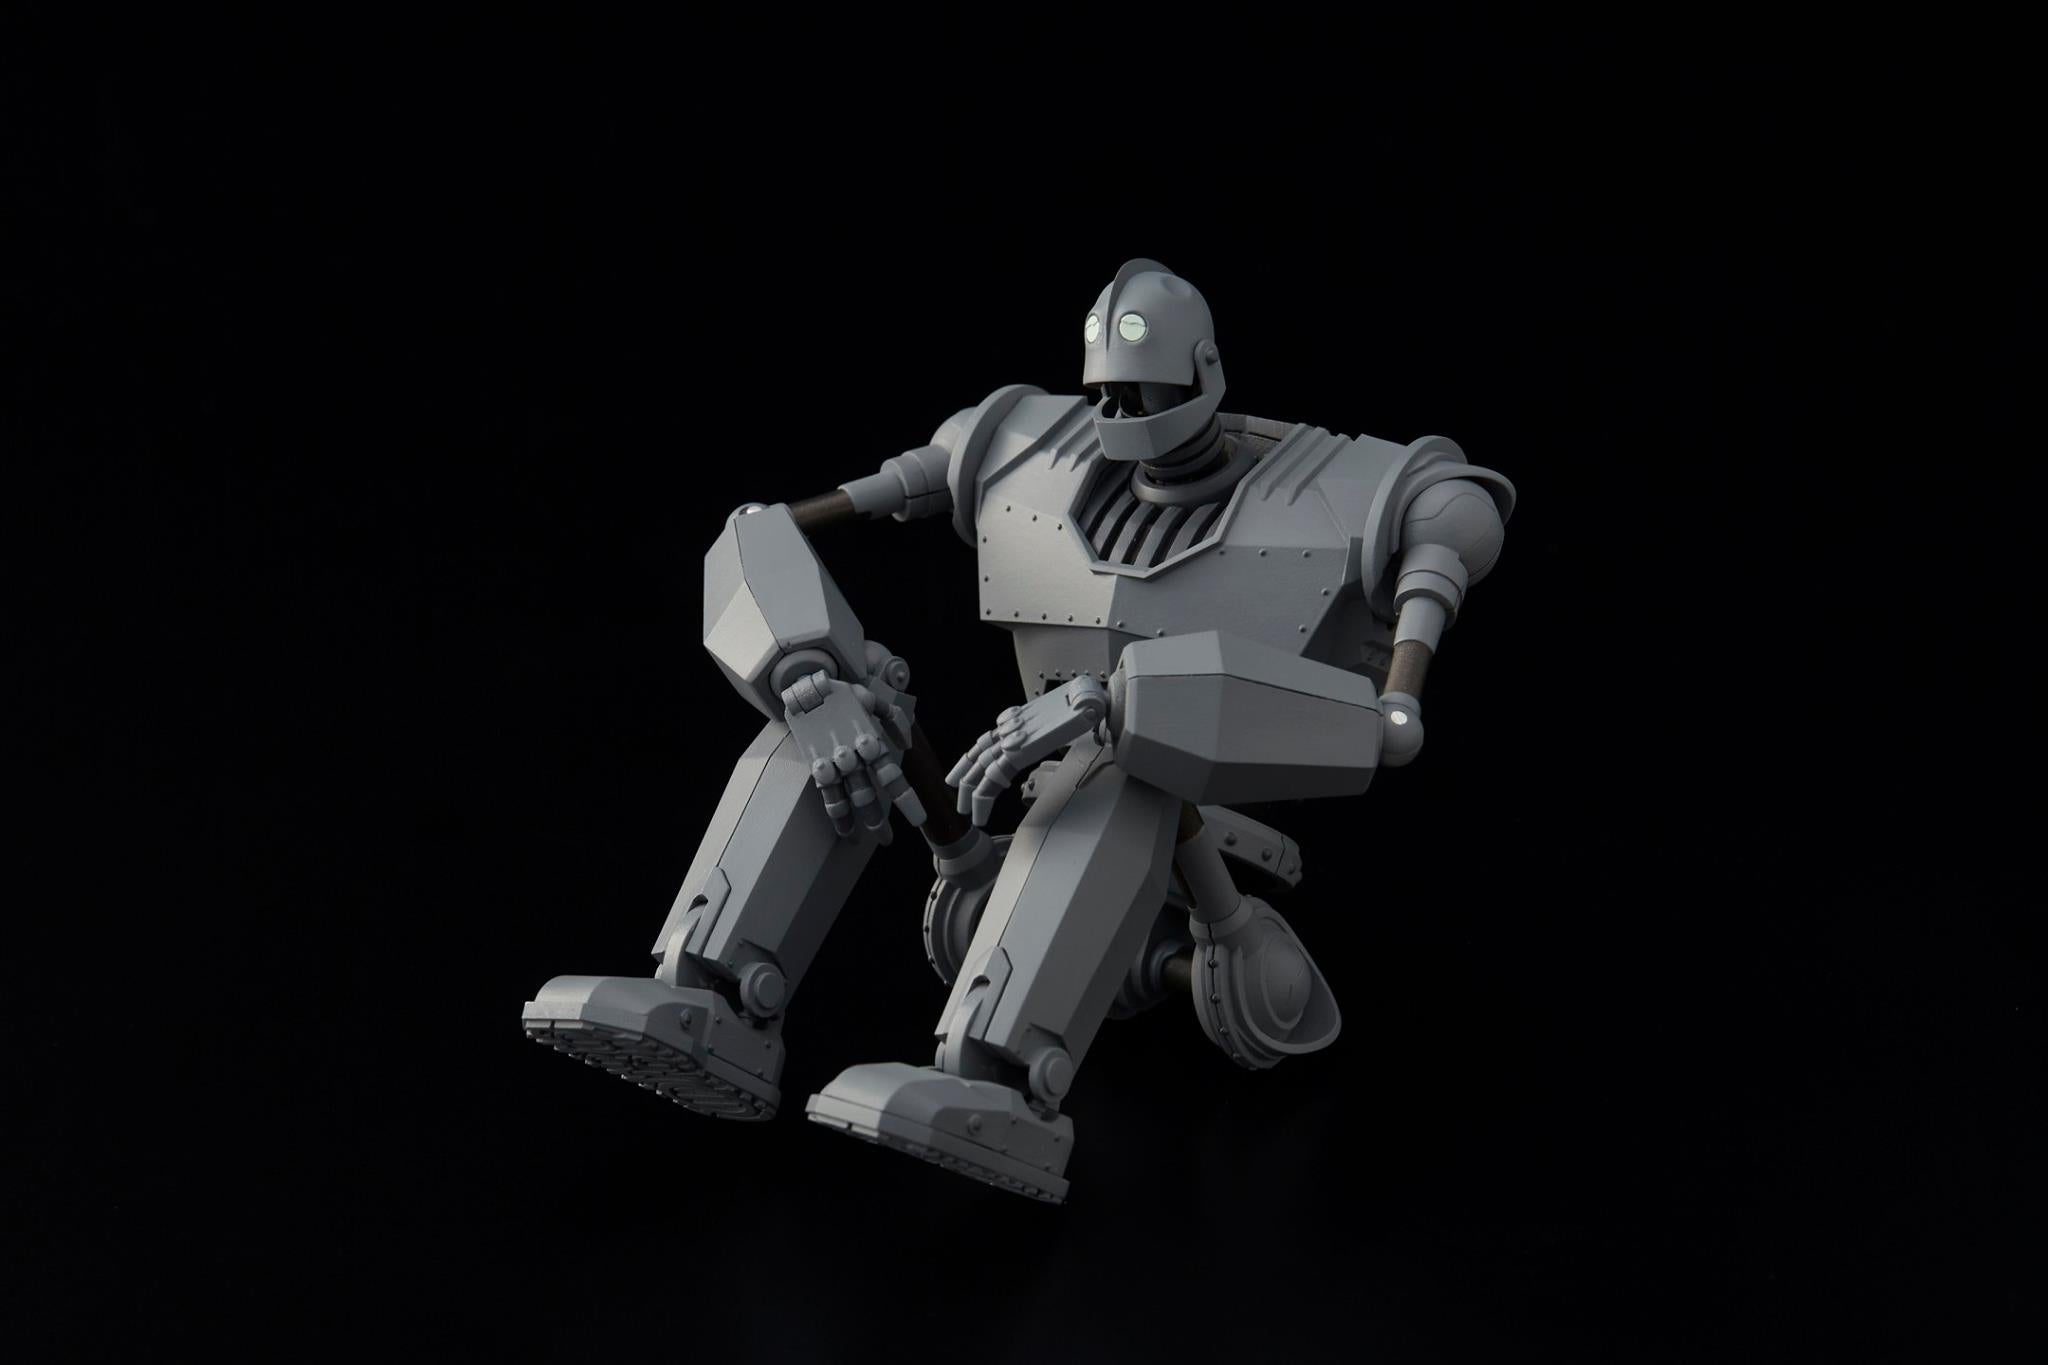 Sentinel - Riobot - The Iron Giant - Iron Giant (Reissue) - Marvelous Toys